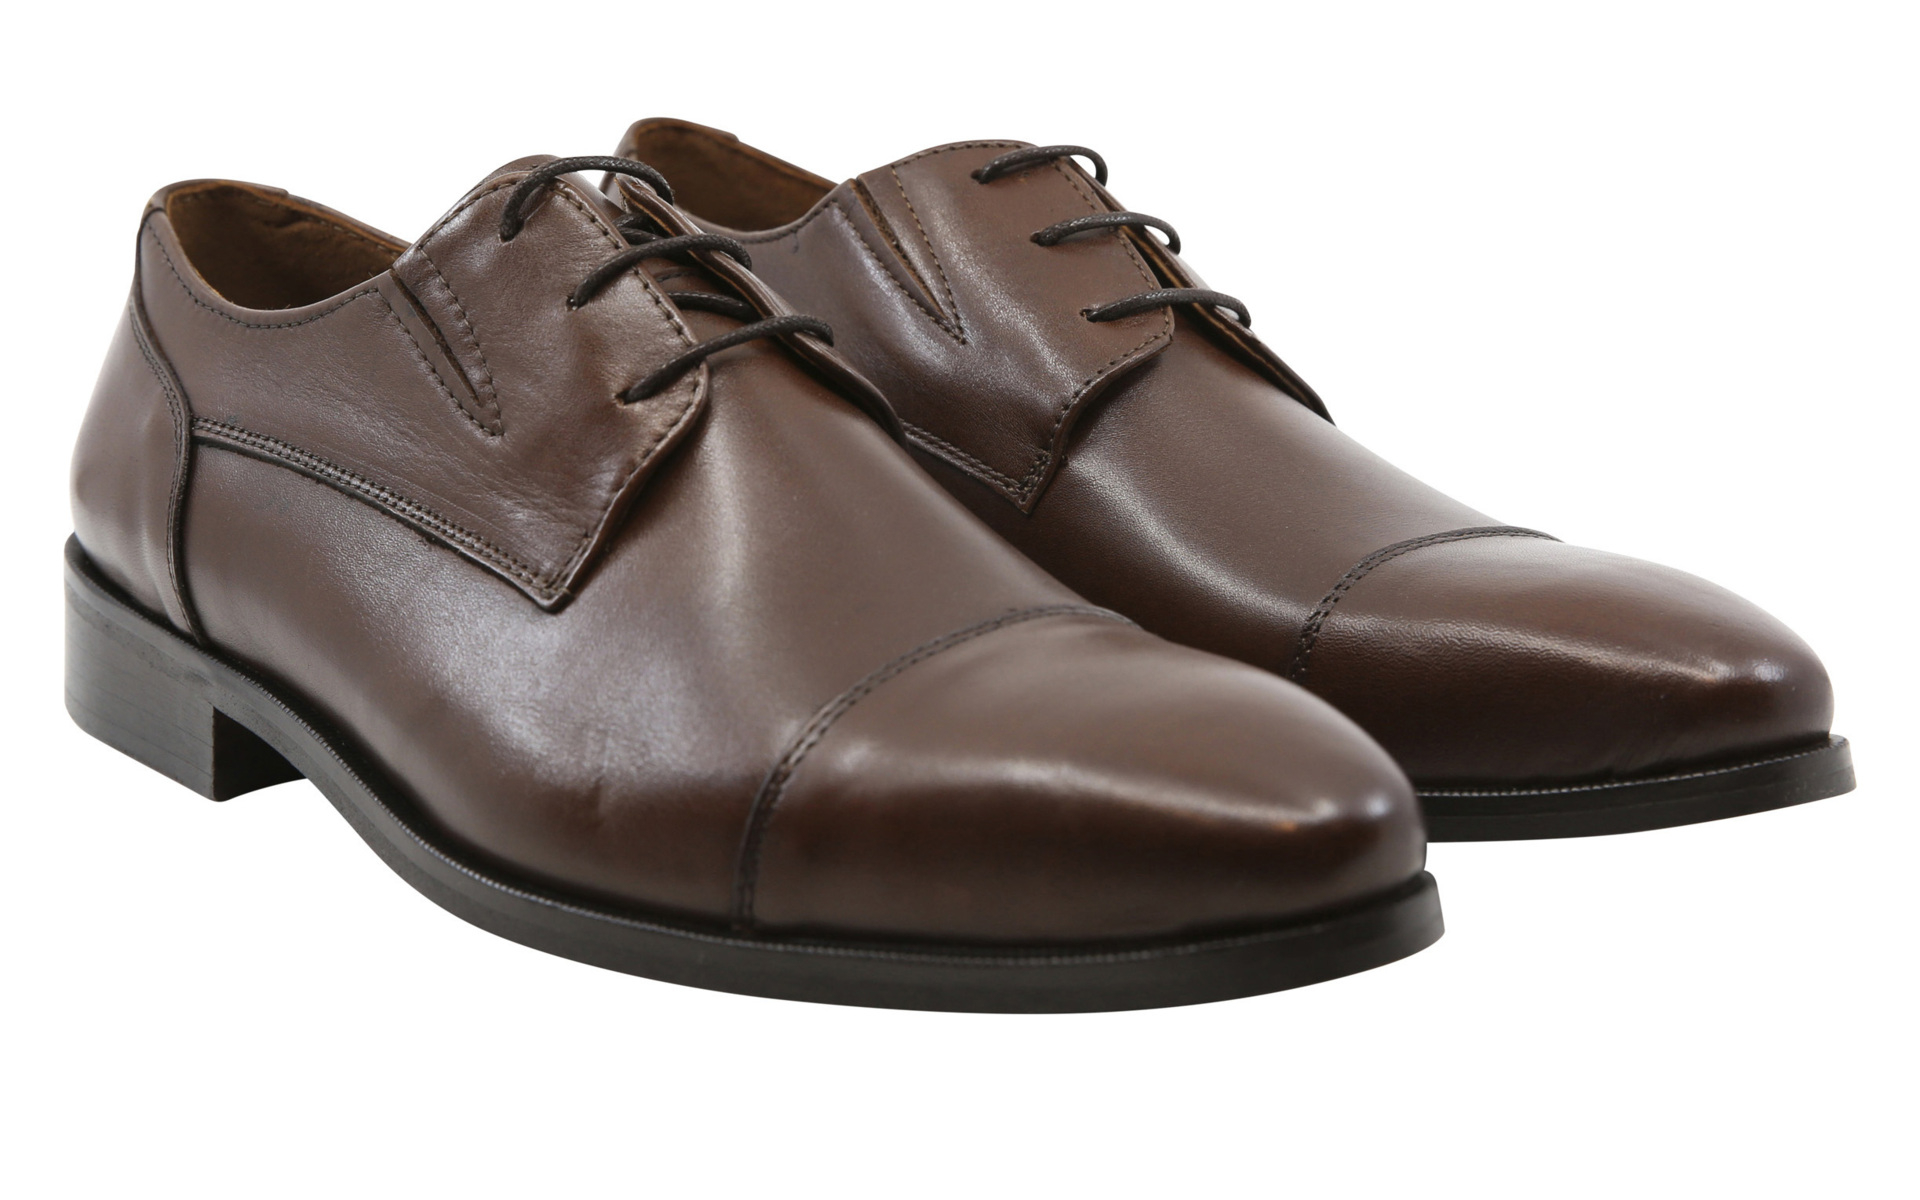 Lindbergh Business schoenen bruin / brown